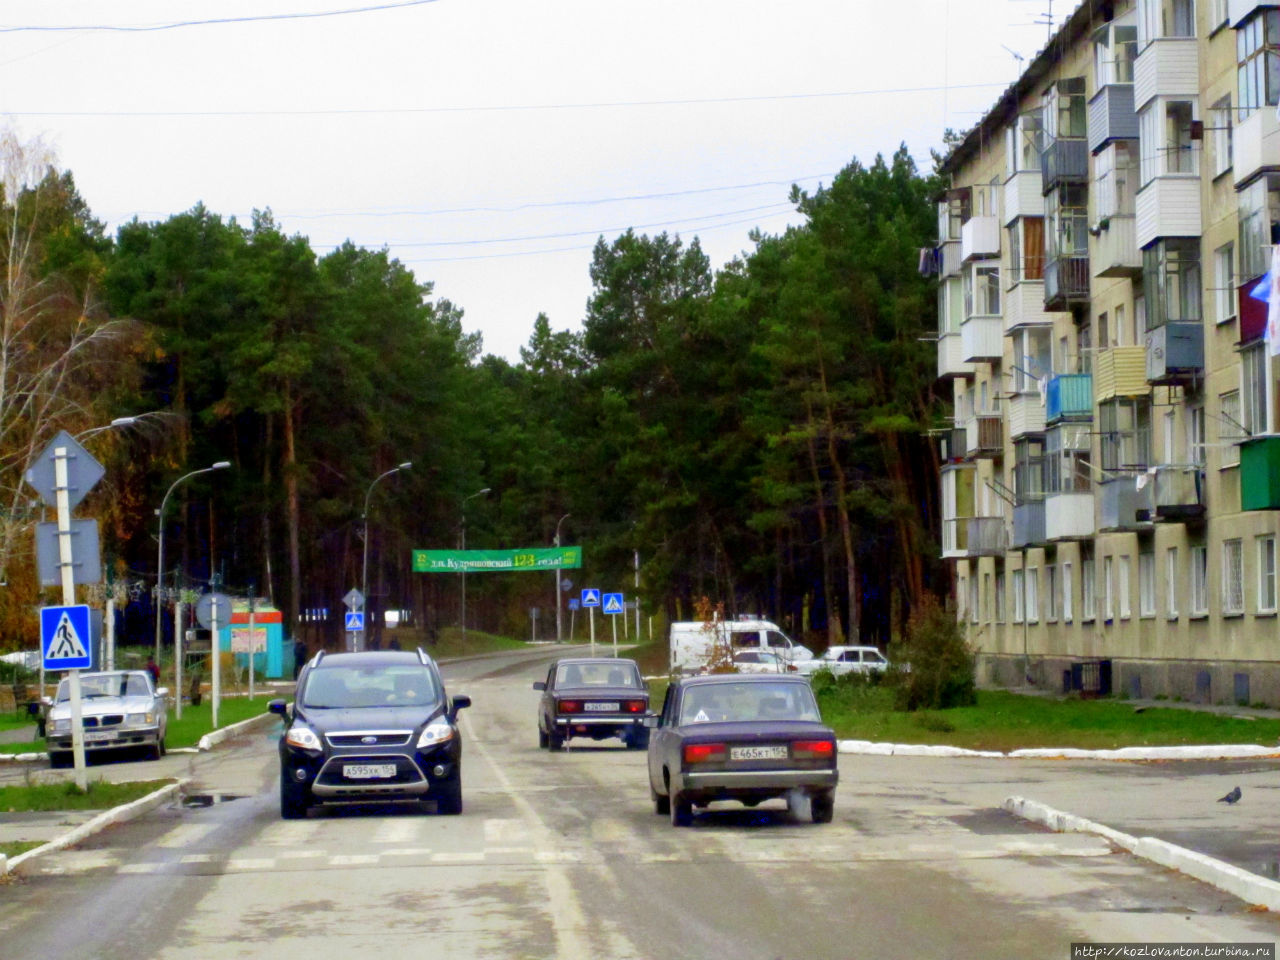 Въезд в поселок со стороны Колыванской трассы. Кудряшовский, Россия